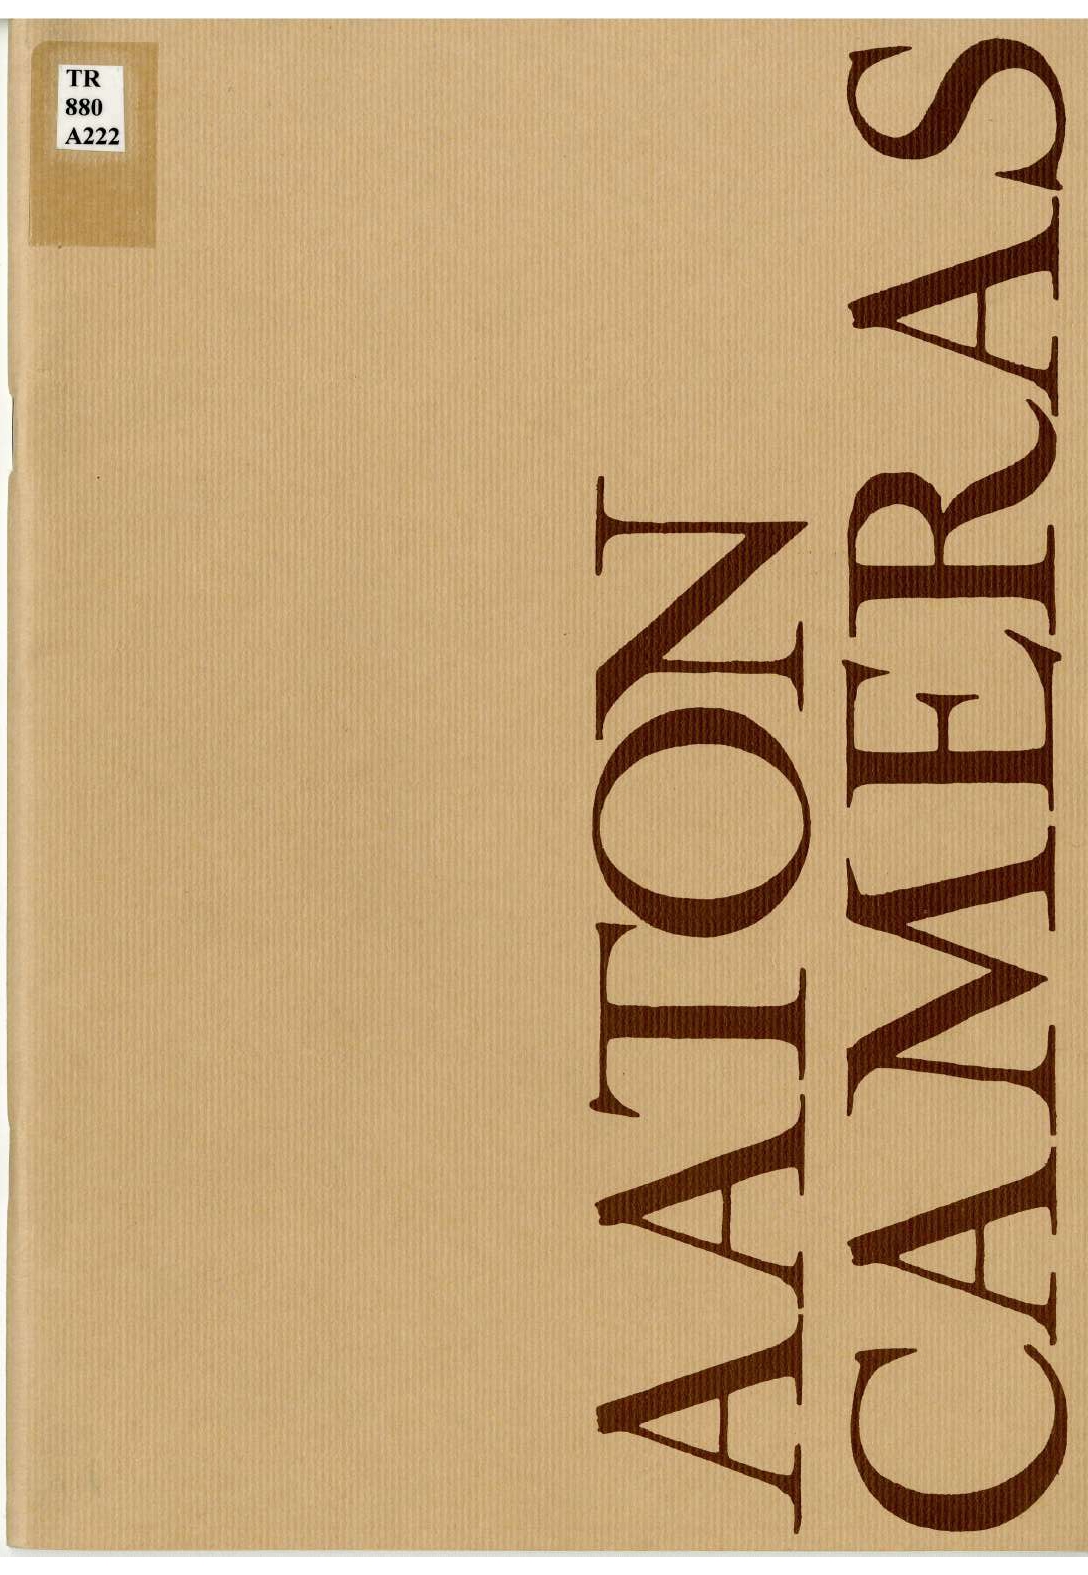 Première page de la brochure. Le fond est jaune uni et il est écrit en gros à la verticale « Aaton Cameras ».